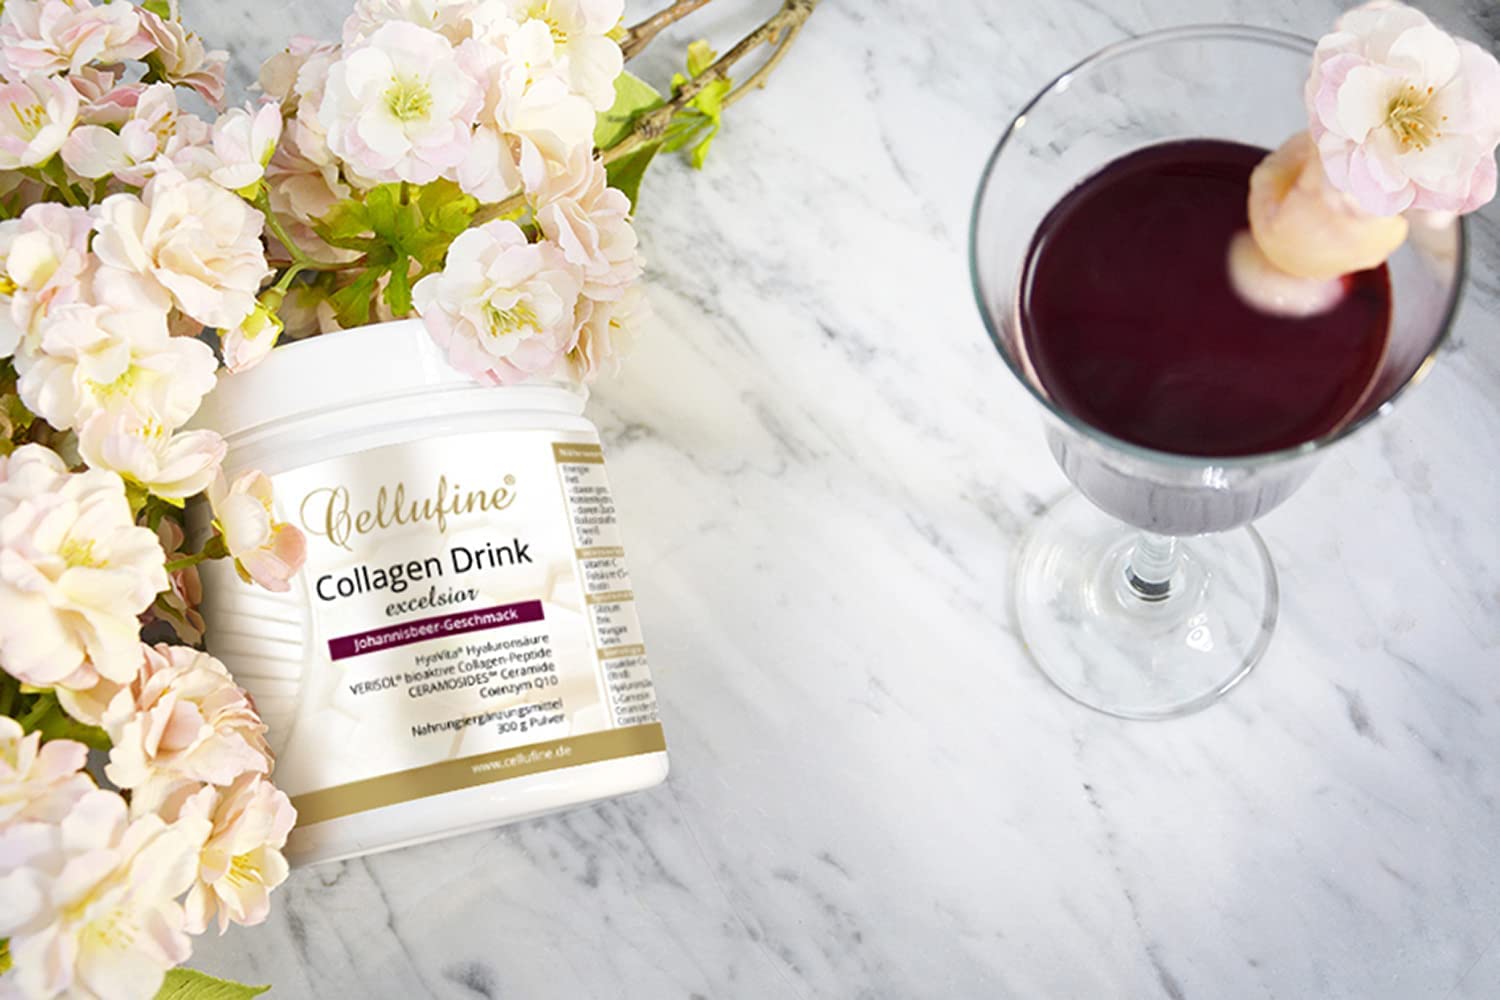 Cellufine Premium Collagen-Drink excelsior mit HyaVita Hyaluronsure & Verisol